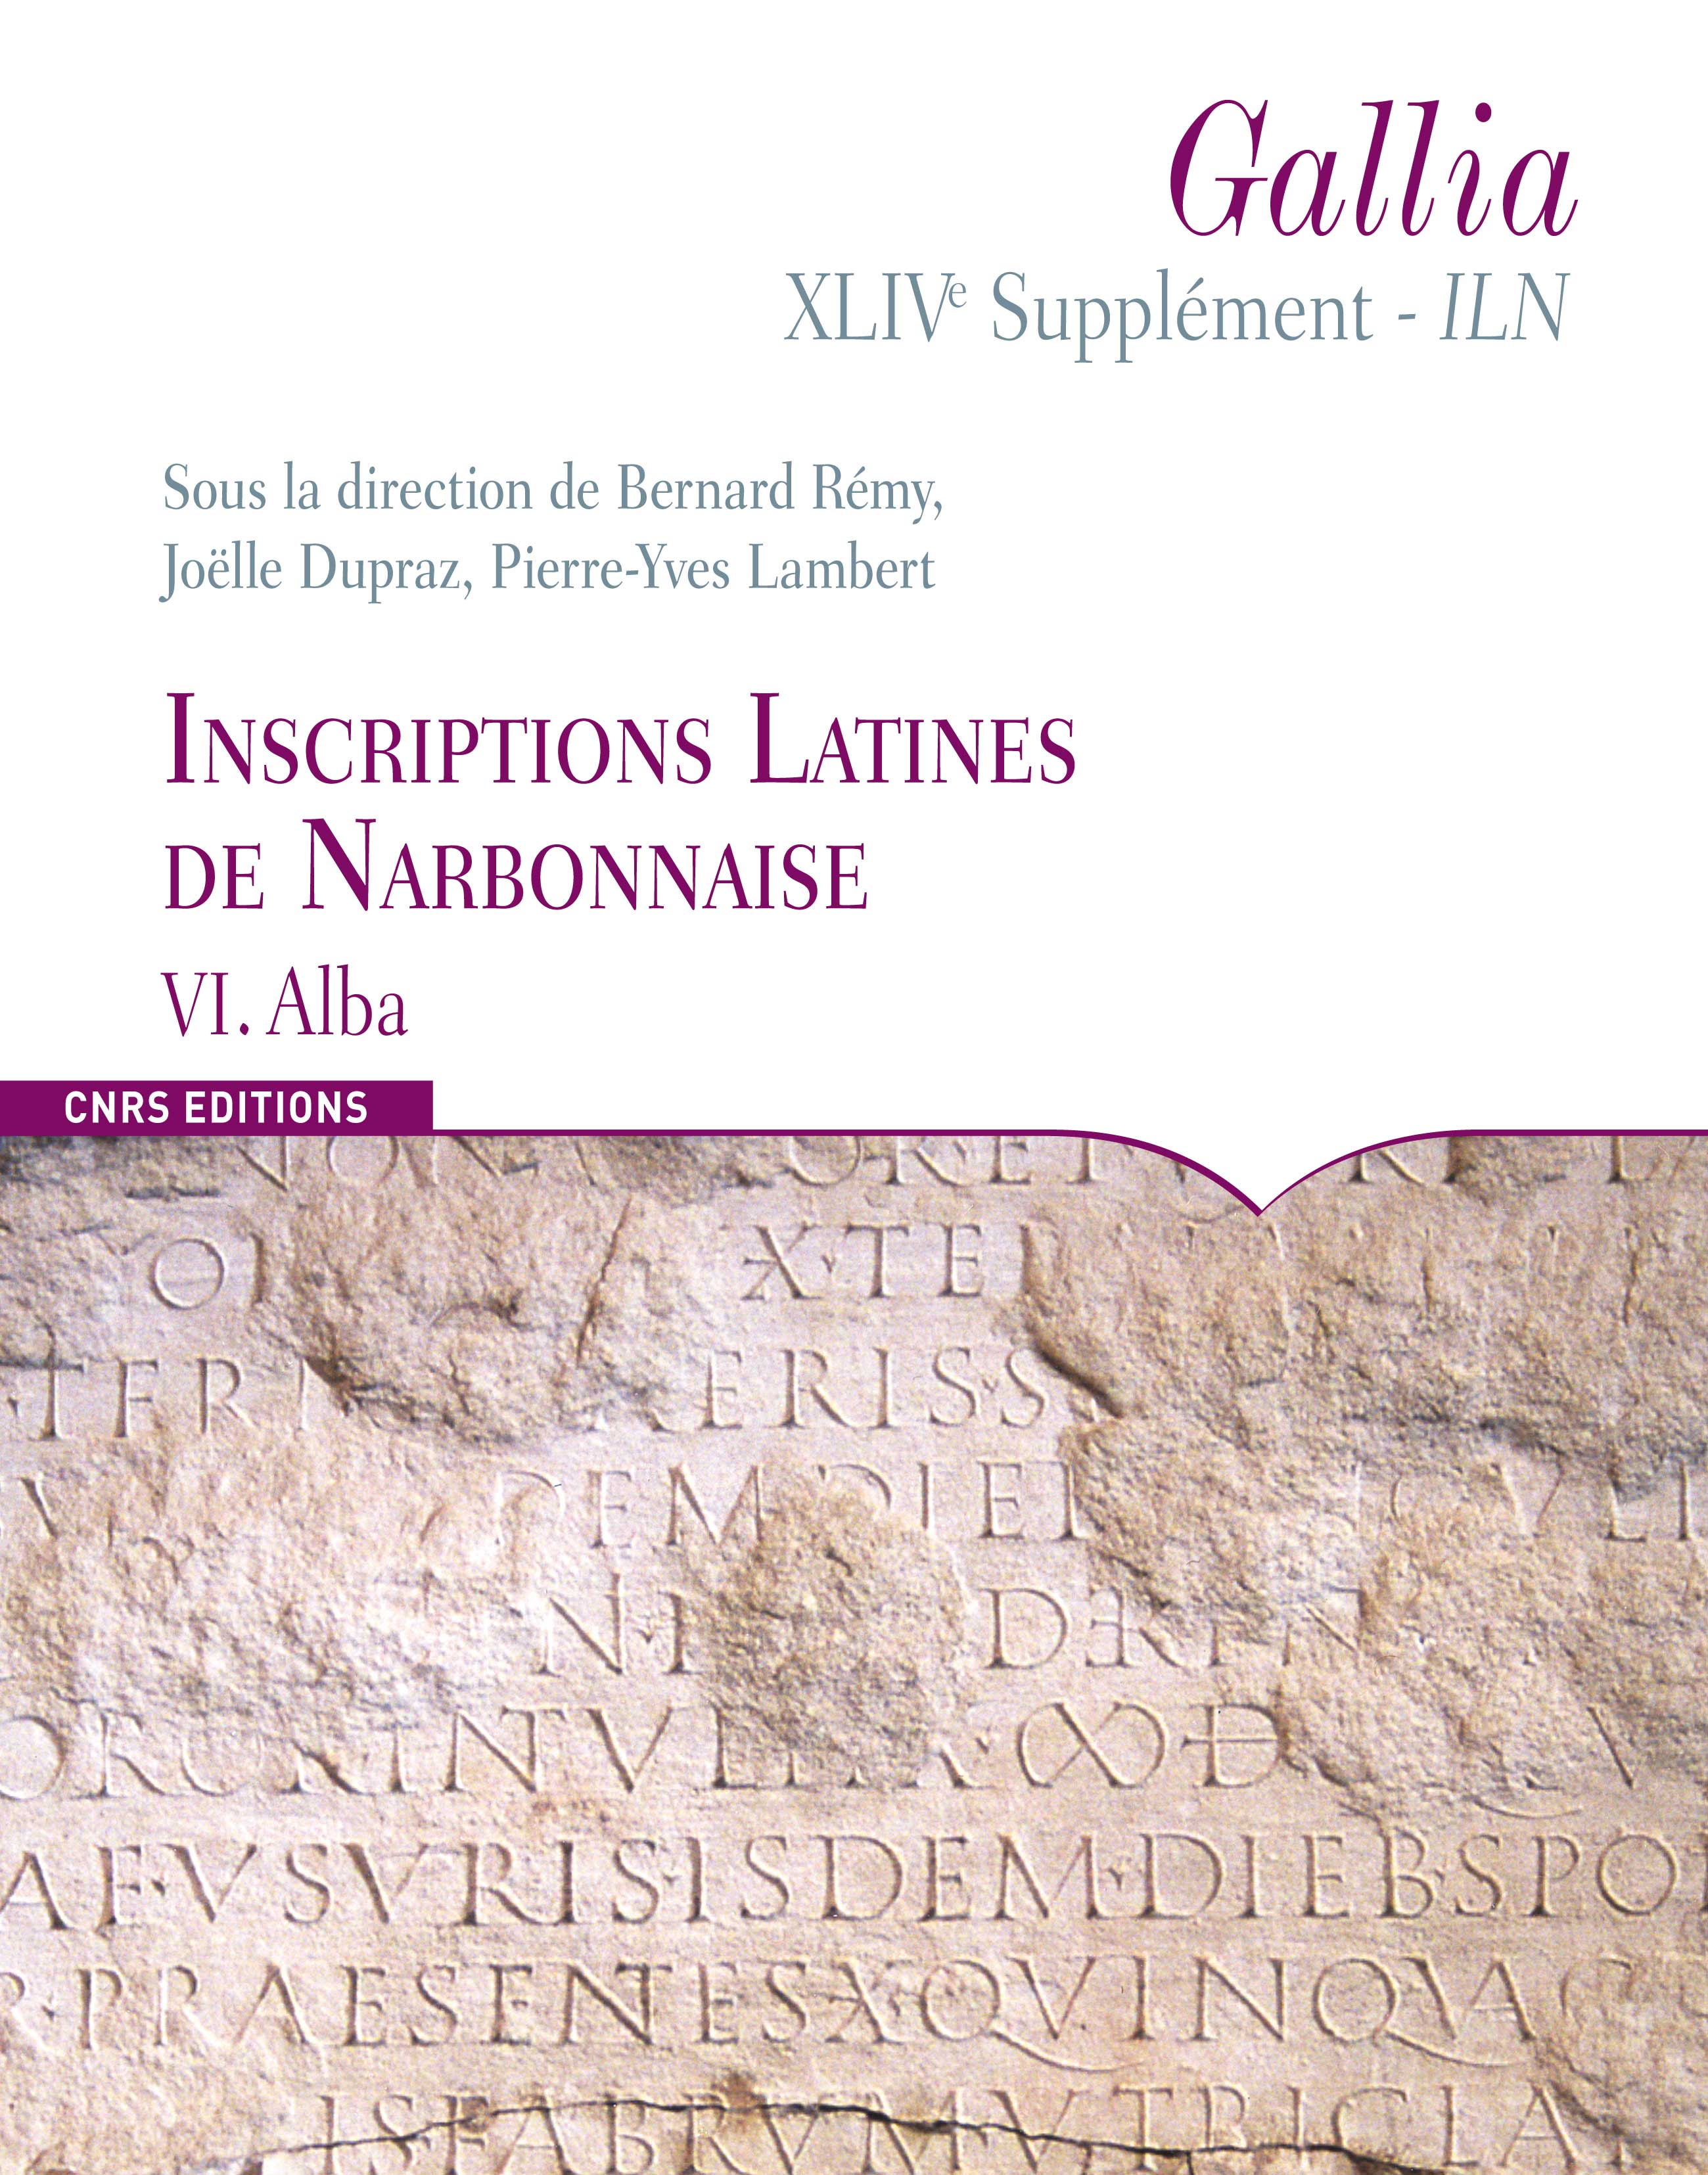 ÉPUISÉ - Inscriptions latines de Narbonnaise VI, Alba, (Suppl. Gallia 44/6, Inscriptions latines de Narbonnaise), 2011, 238 p.